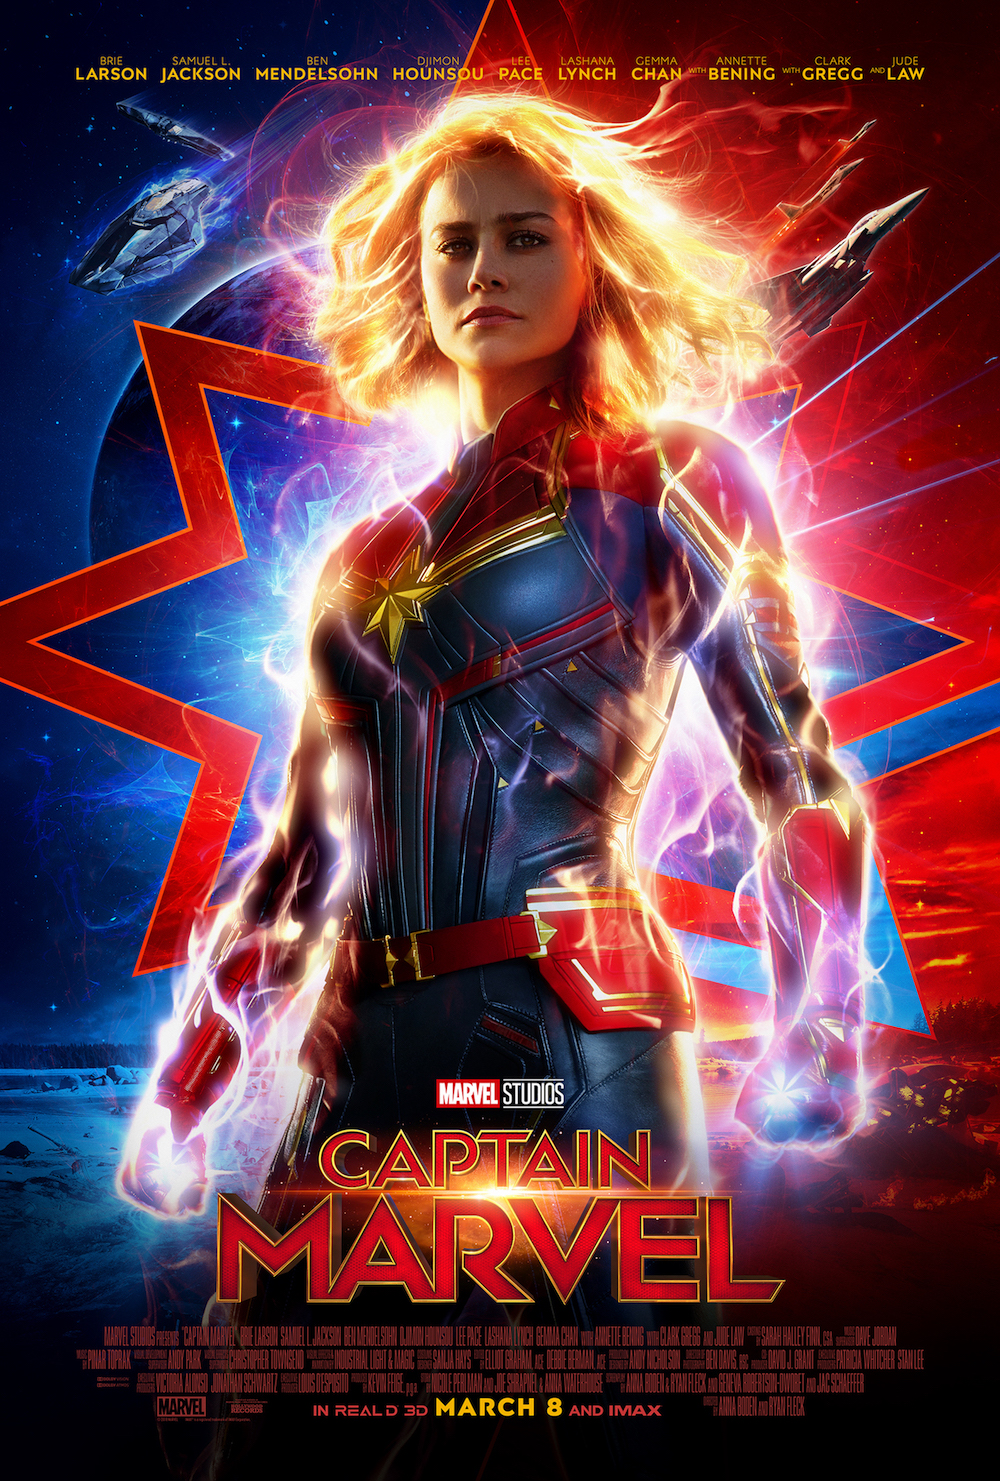 Brie Larson, captain marvel